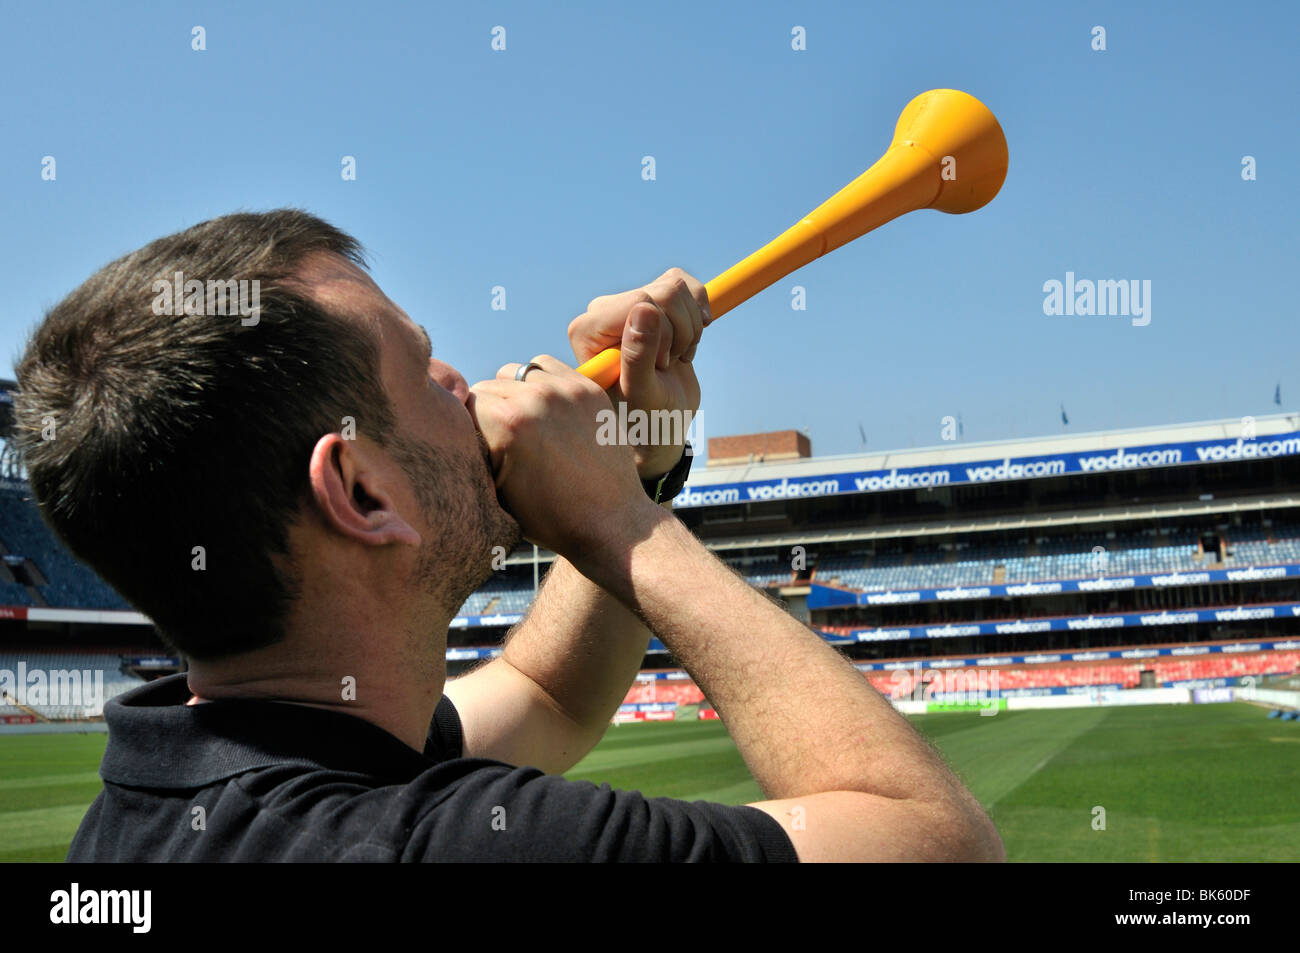 Du monde de la FIFA 2010, fan de foot avec un Vuvuzela, l'instrument de musique des fans de football sud-africain, Loftus Versfeld Banque D'Images